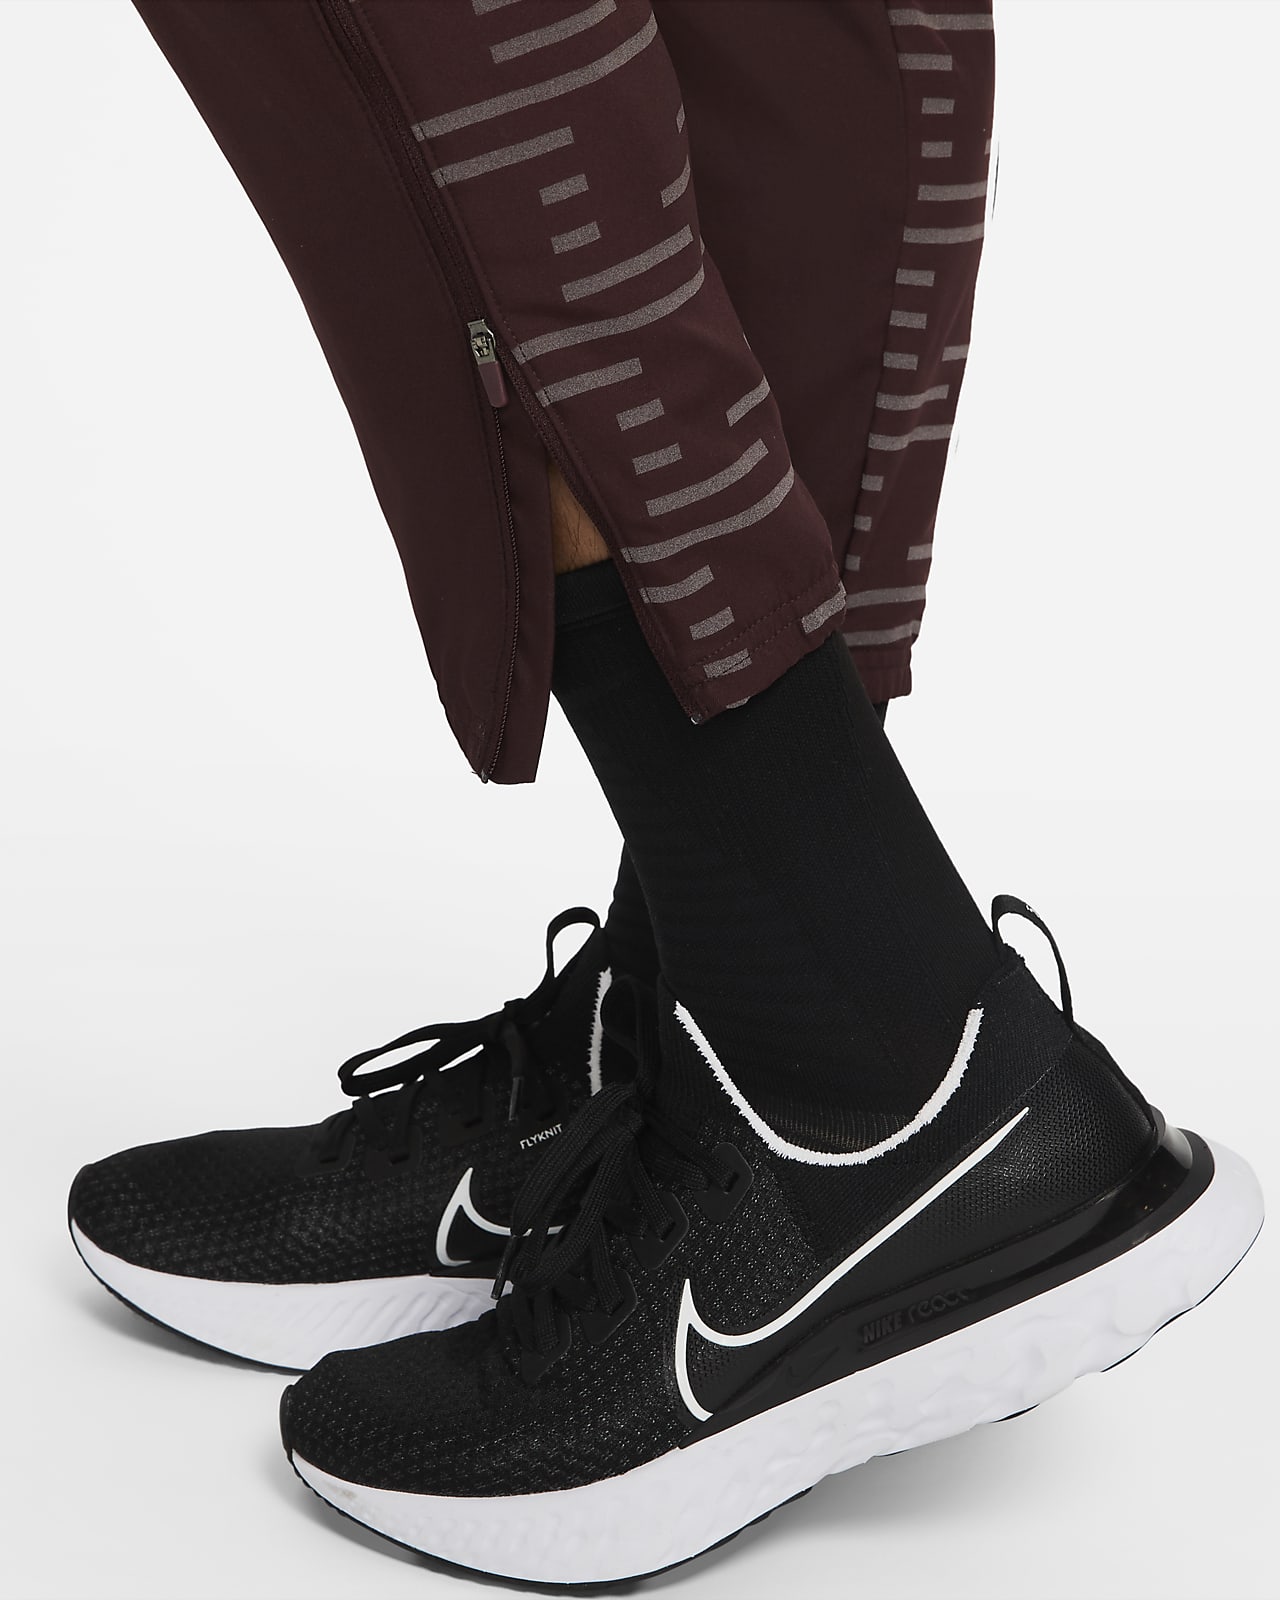 Running Pants  Tights Nikecom